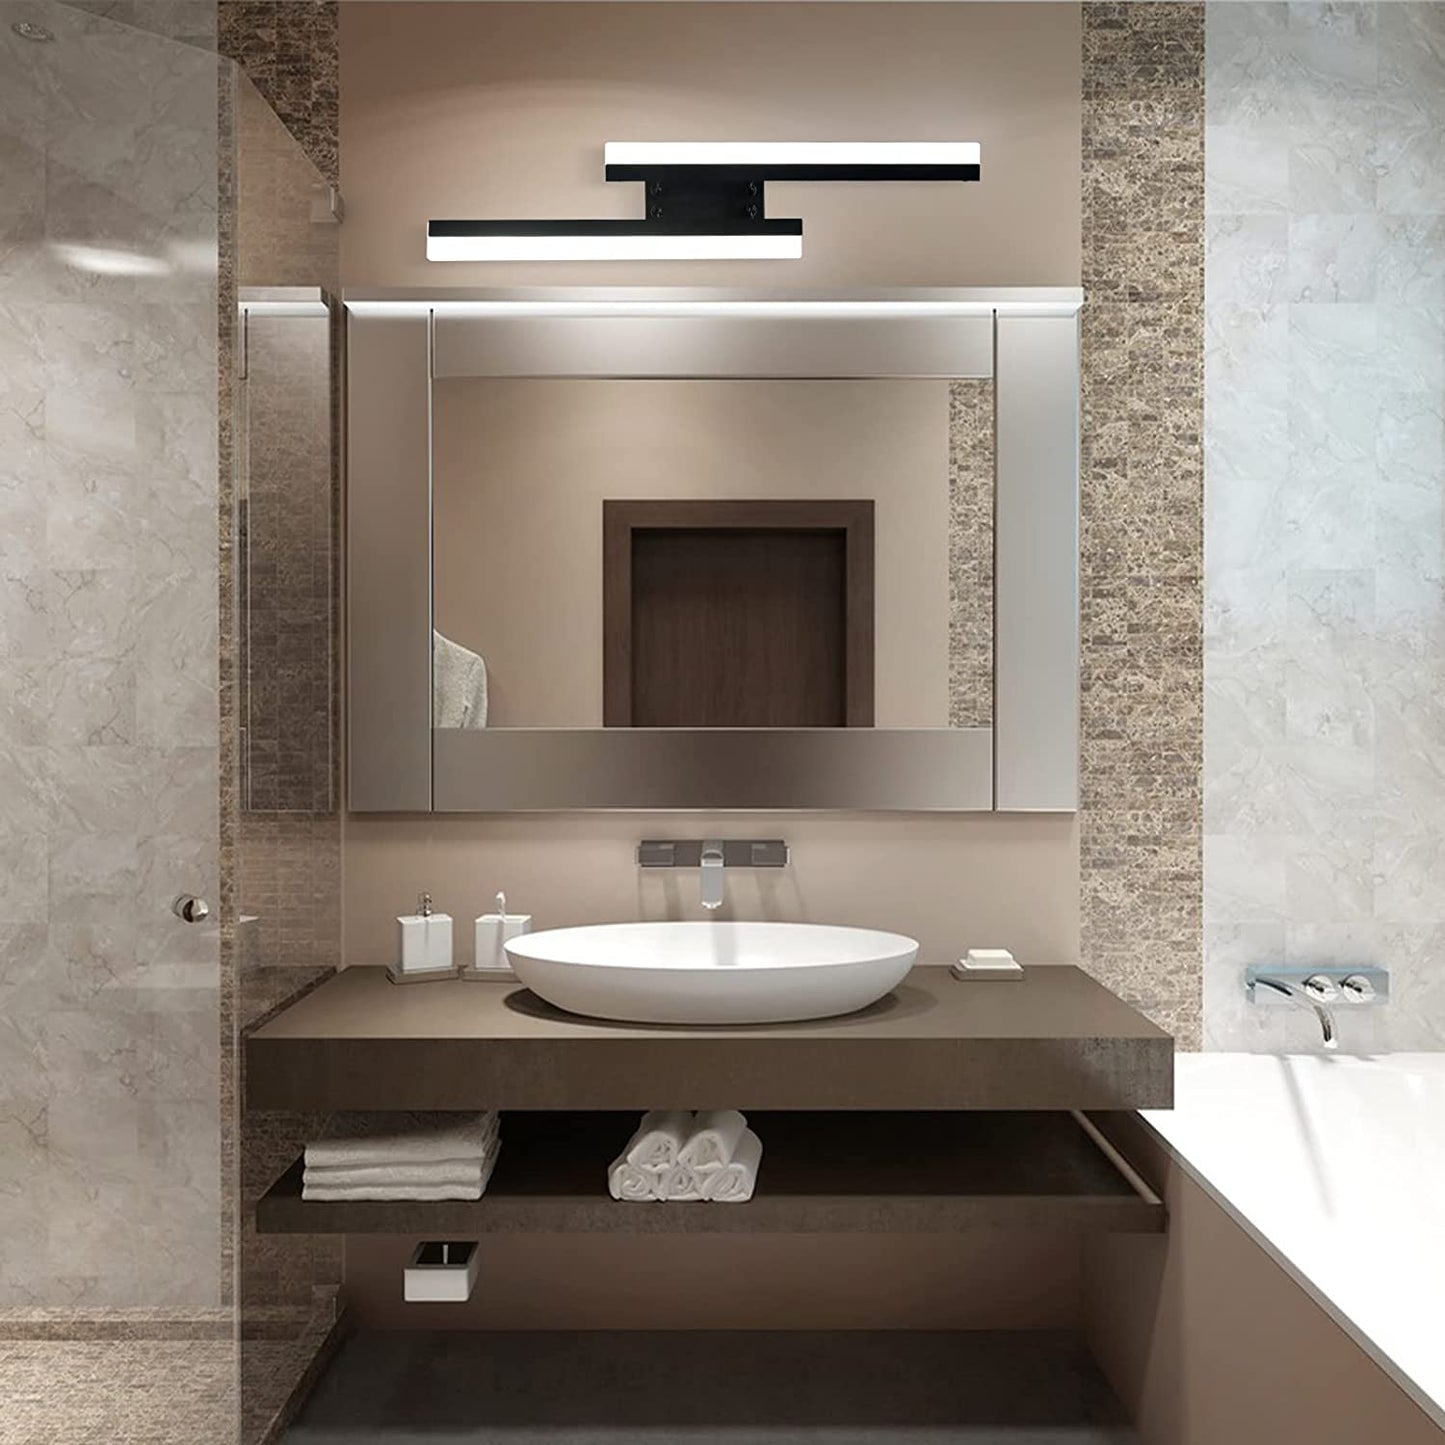 Leefact 24in Bathroom Vanity Light Modern Vanity LED Lighting Fixtures Over Mirror